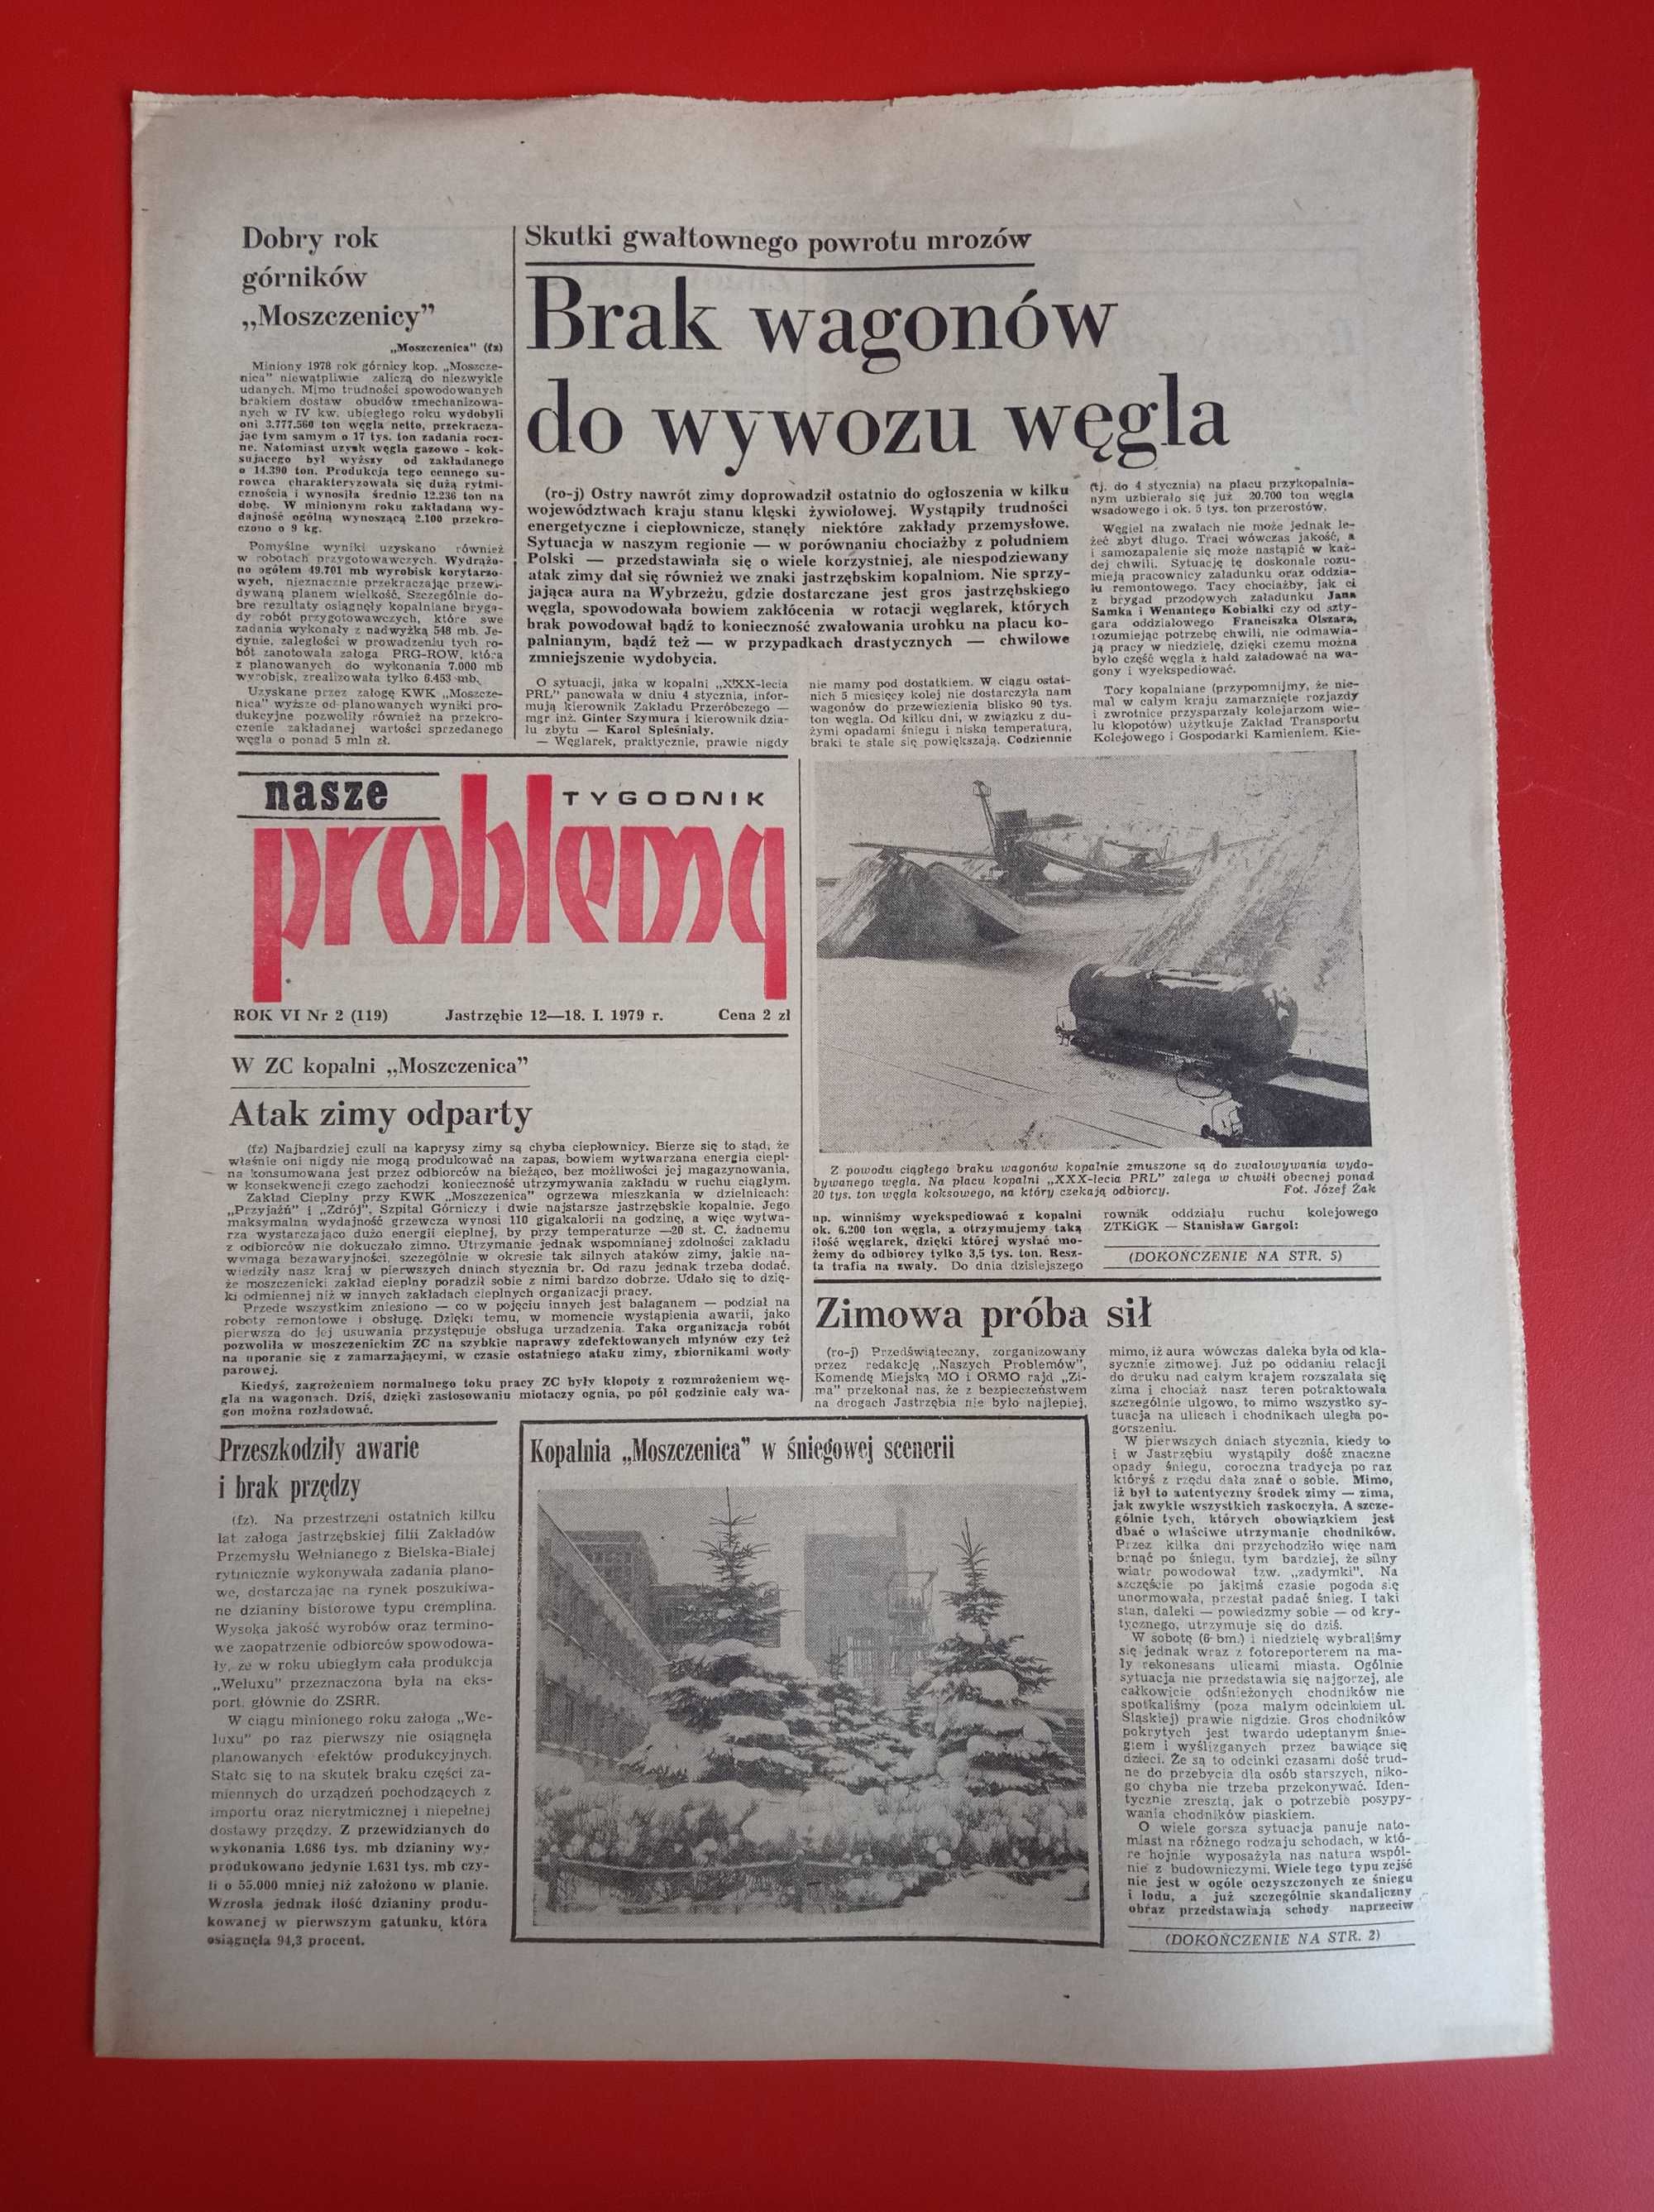 Nasze problemy, Jastrzębie, nr 2, 12-18 stycznia 1979